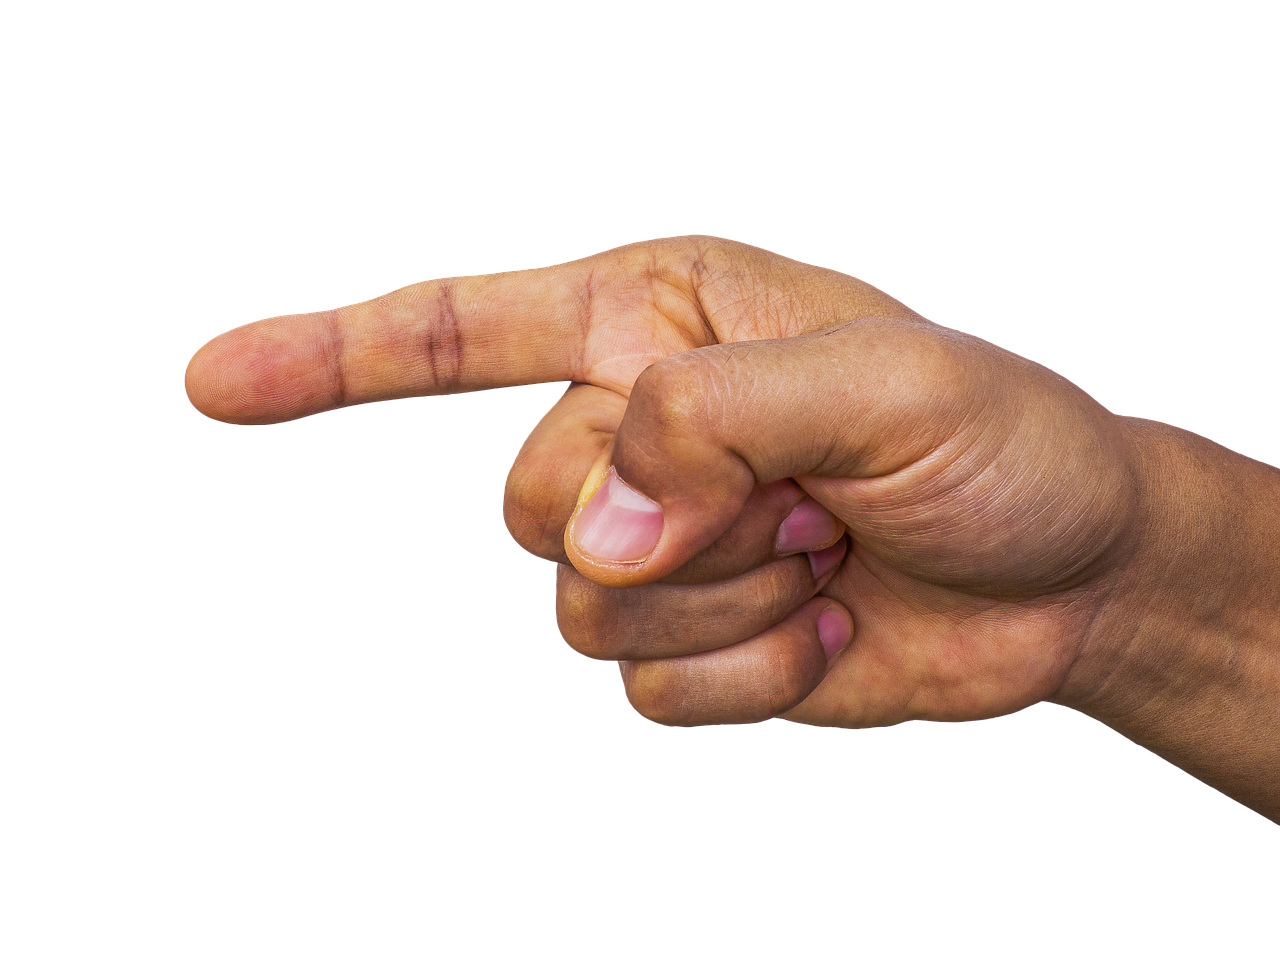 La imagen muestra una mano con el dedo índice extendido, señalando